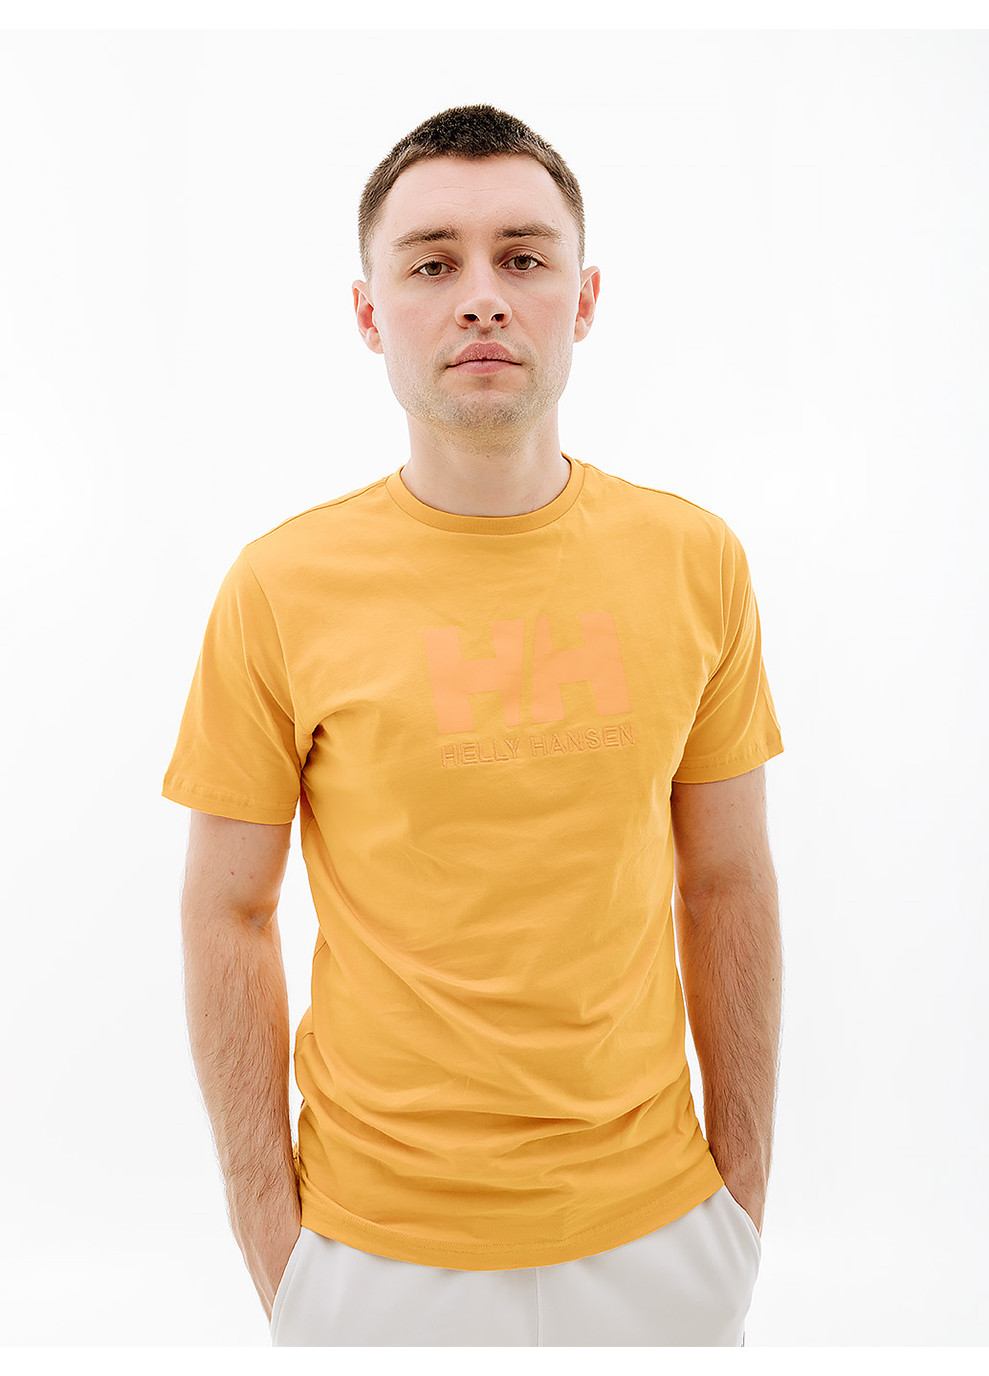 Оранжевая мужская футболка hhogo t-shirt оранжевый Helly Hansen